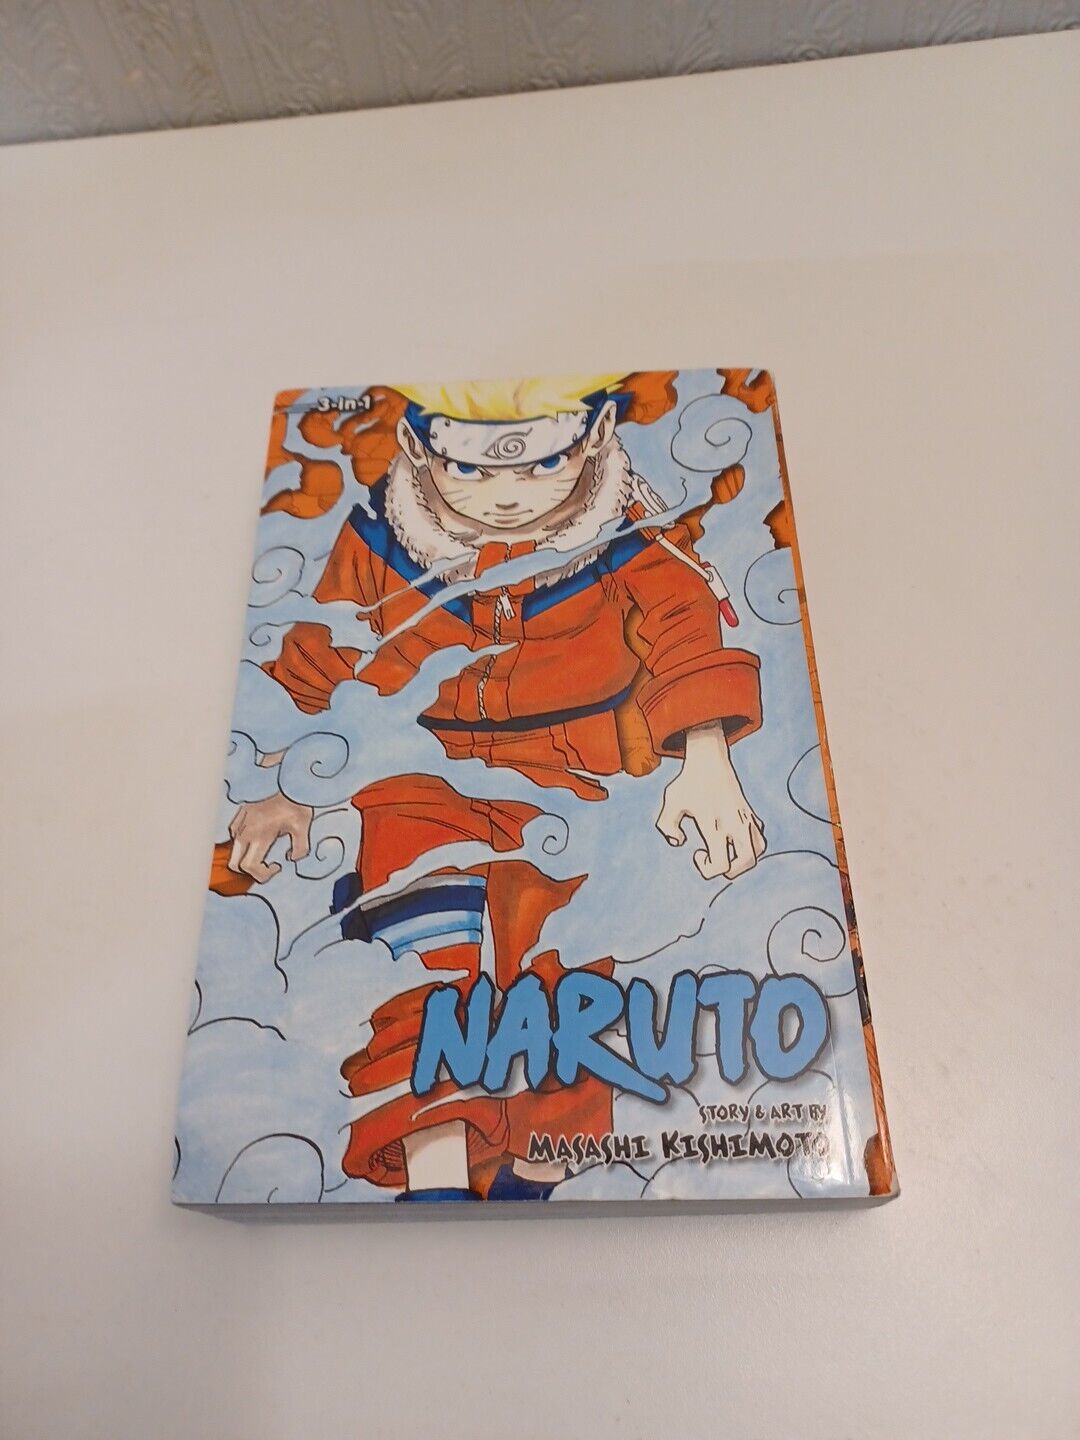 Naruto (3-In-1 Edition), Vol. 1-3 English Naruto by Masashi Kishimoto Manga